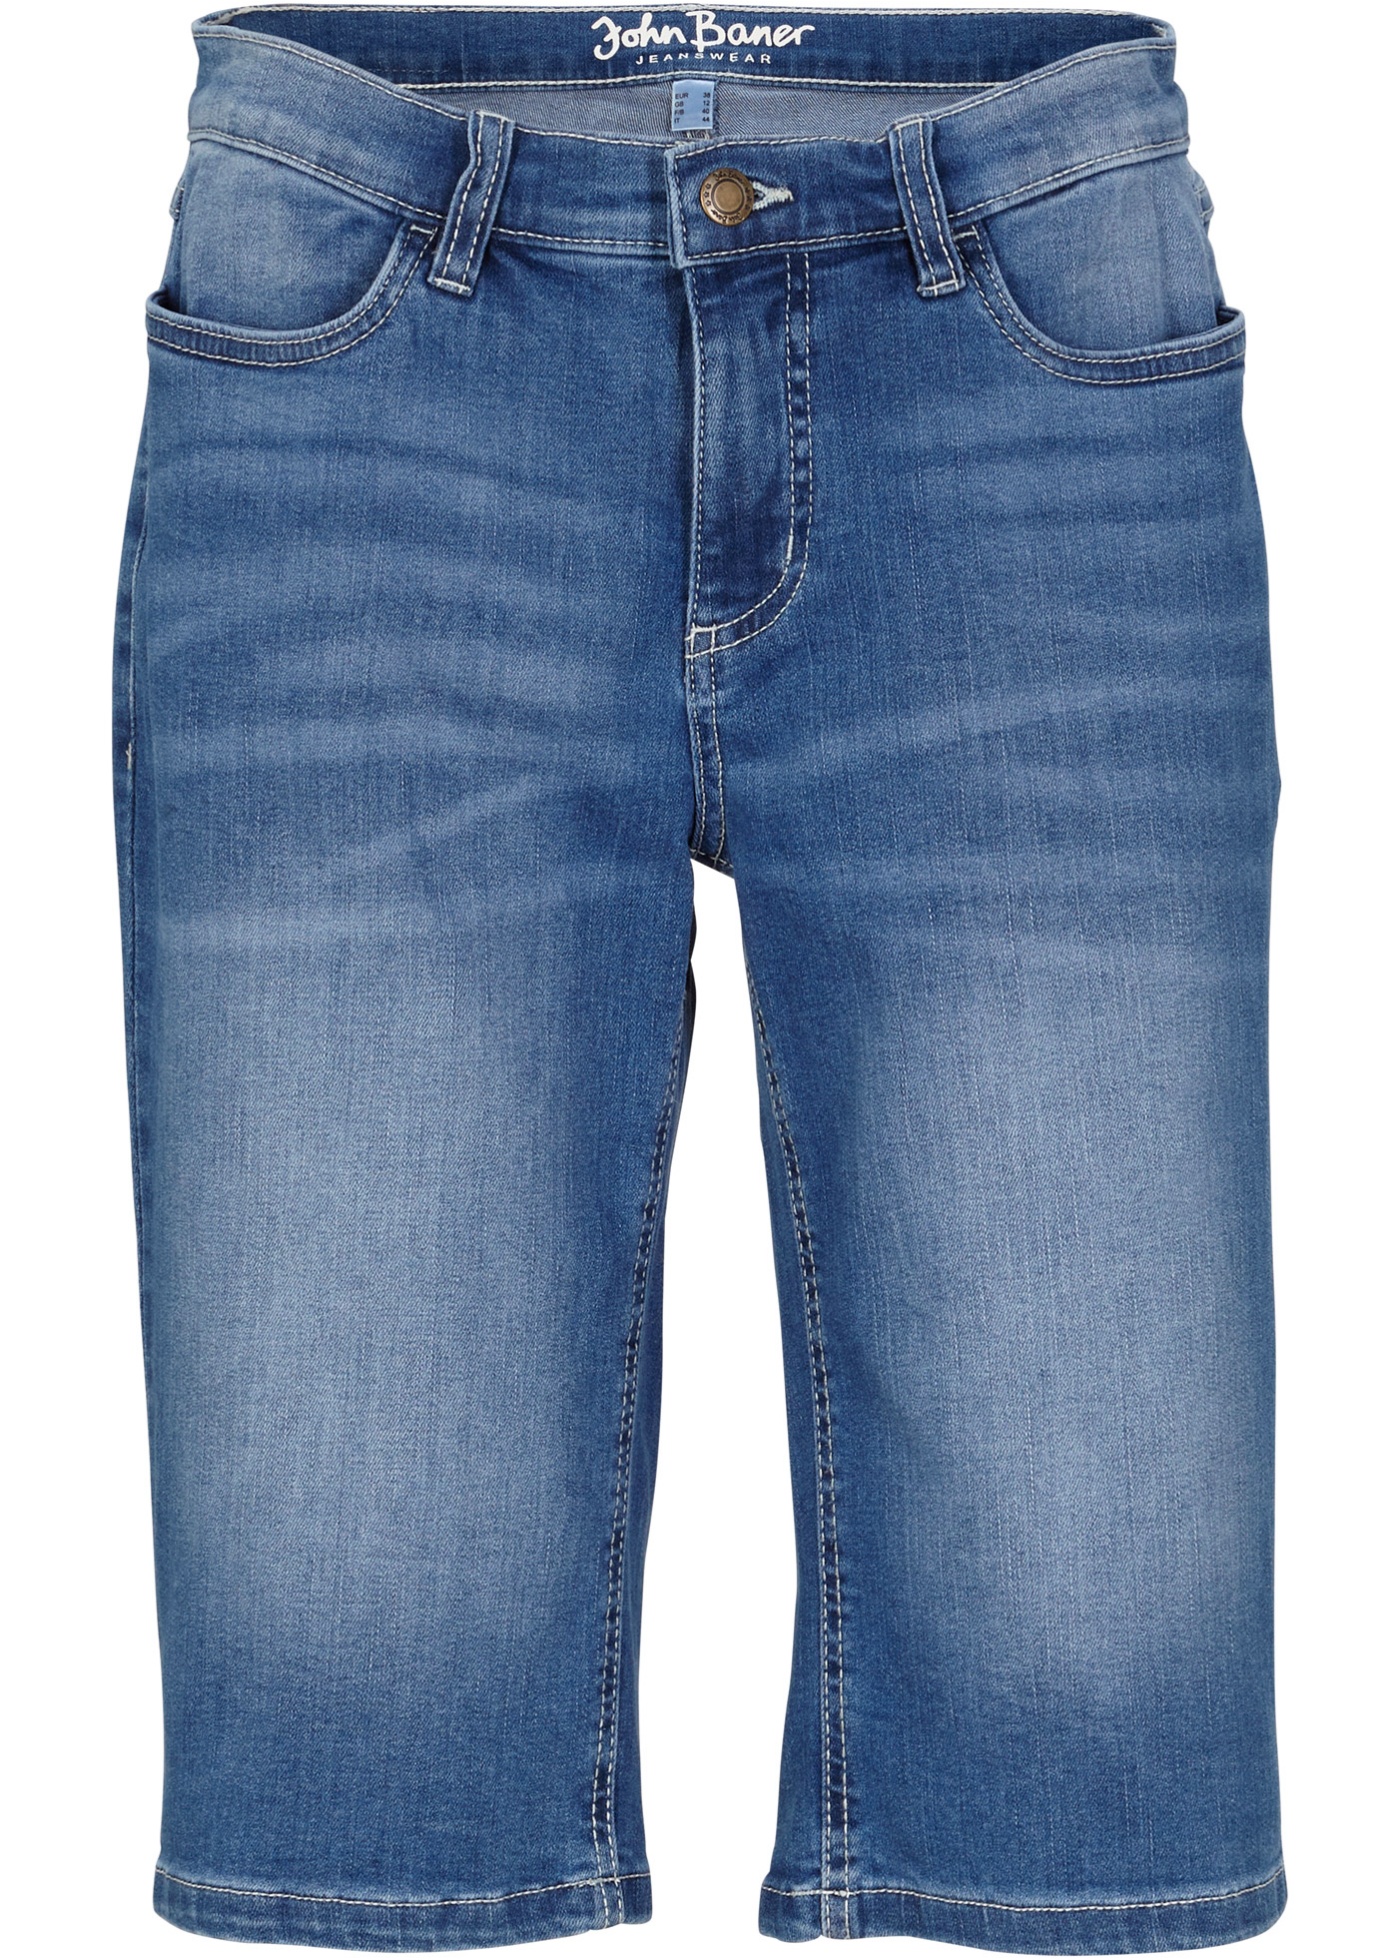 Bermuda comfort stretch jeans